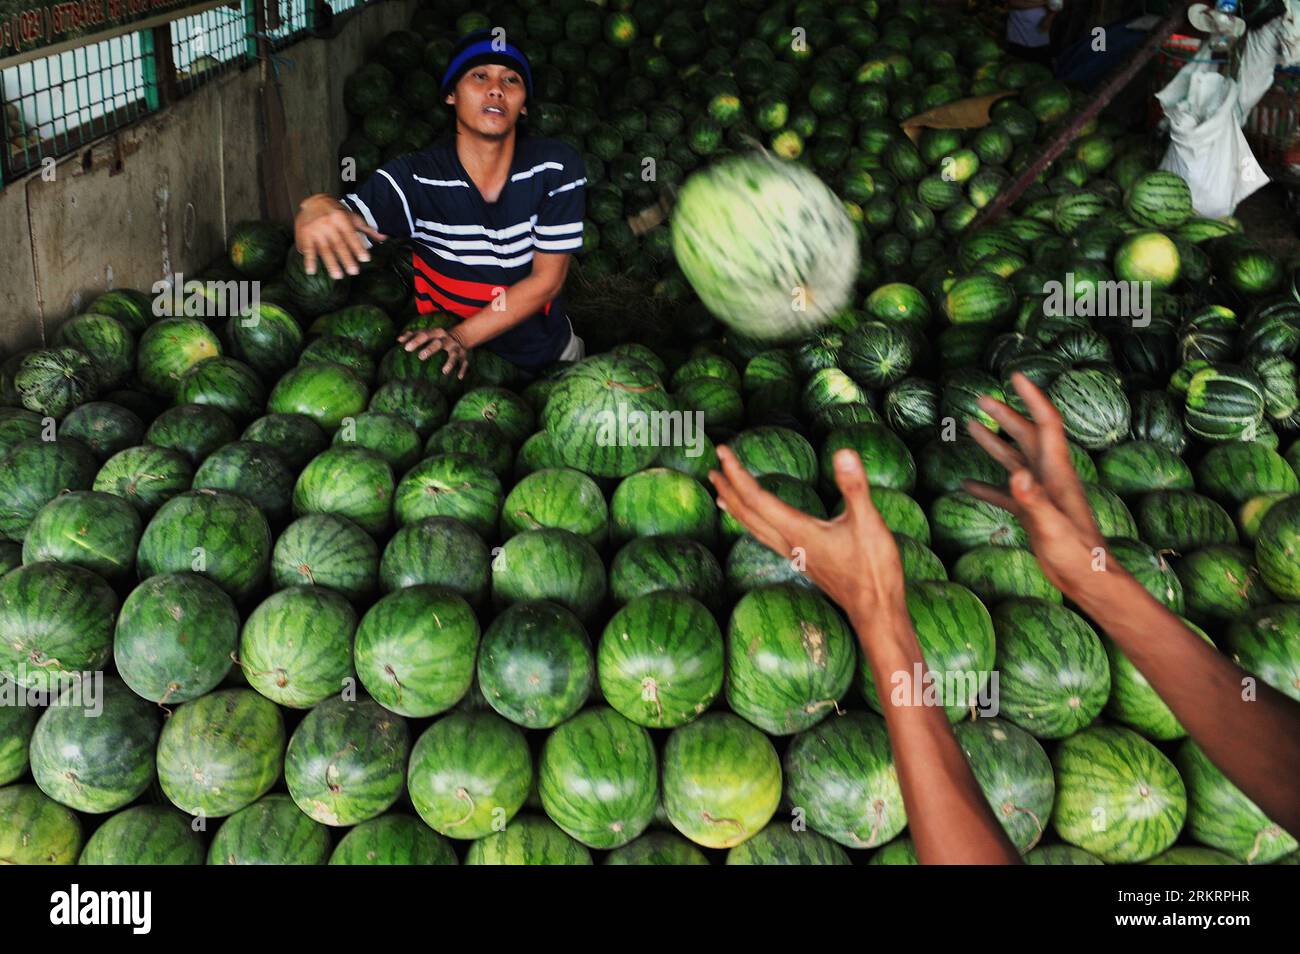 Bildnummer: 58289611  Datum: 30.07.2012  Copyright: imago/Xinhua (120730) -- JAKARTA, July 30, 2012 (Xinhua) -- A fruit vendor throws a watermelon as he sorts out good fruits to sell at a traditional fruit market in Kramat Jati of Jakarta, Indonesia, July 30, 2012. (Xinhua/Agung Kuncahya B.) (dzl) INDONESIA-JAKARTA-DAILY LIFE-TRADITIONAL FRUIT MARKET PUBLICATIONxNOTxINxCHN Gesellschaft Wirtschaft Reise Markt Obst Früchte Melonen xda x0x 2012 quer      58289611 Date 30 07 2012 Copyright Imago XINHUA  Jakarta July 30 2012 XINHUA a Fruit Vendor throws a Watermelon As he sorts out Good Fruits to S Stock Photo